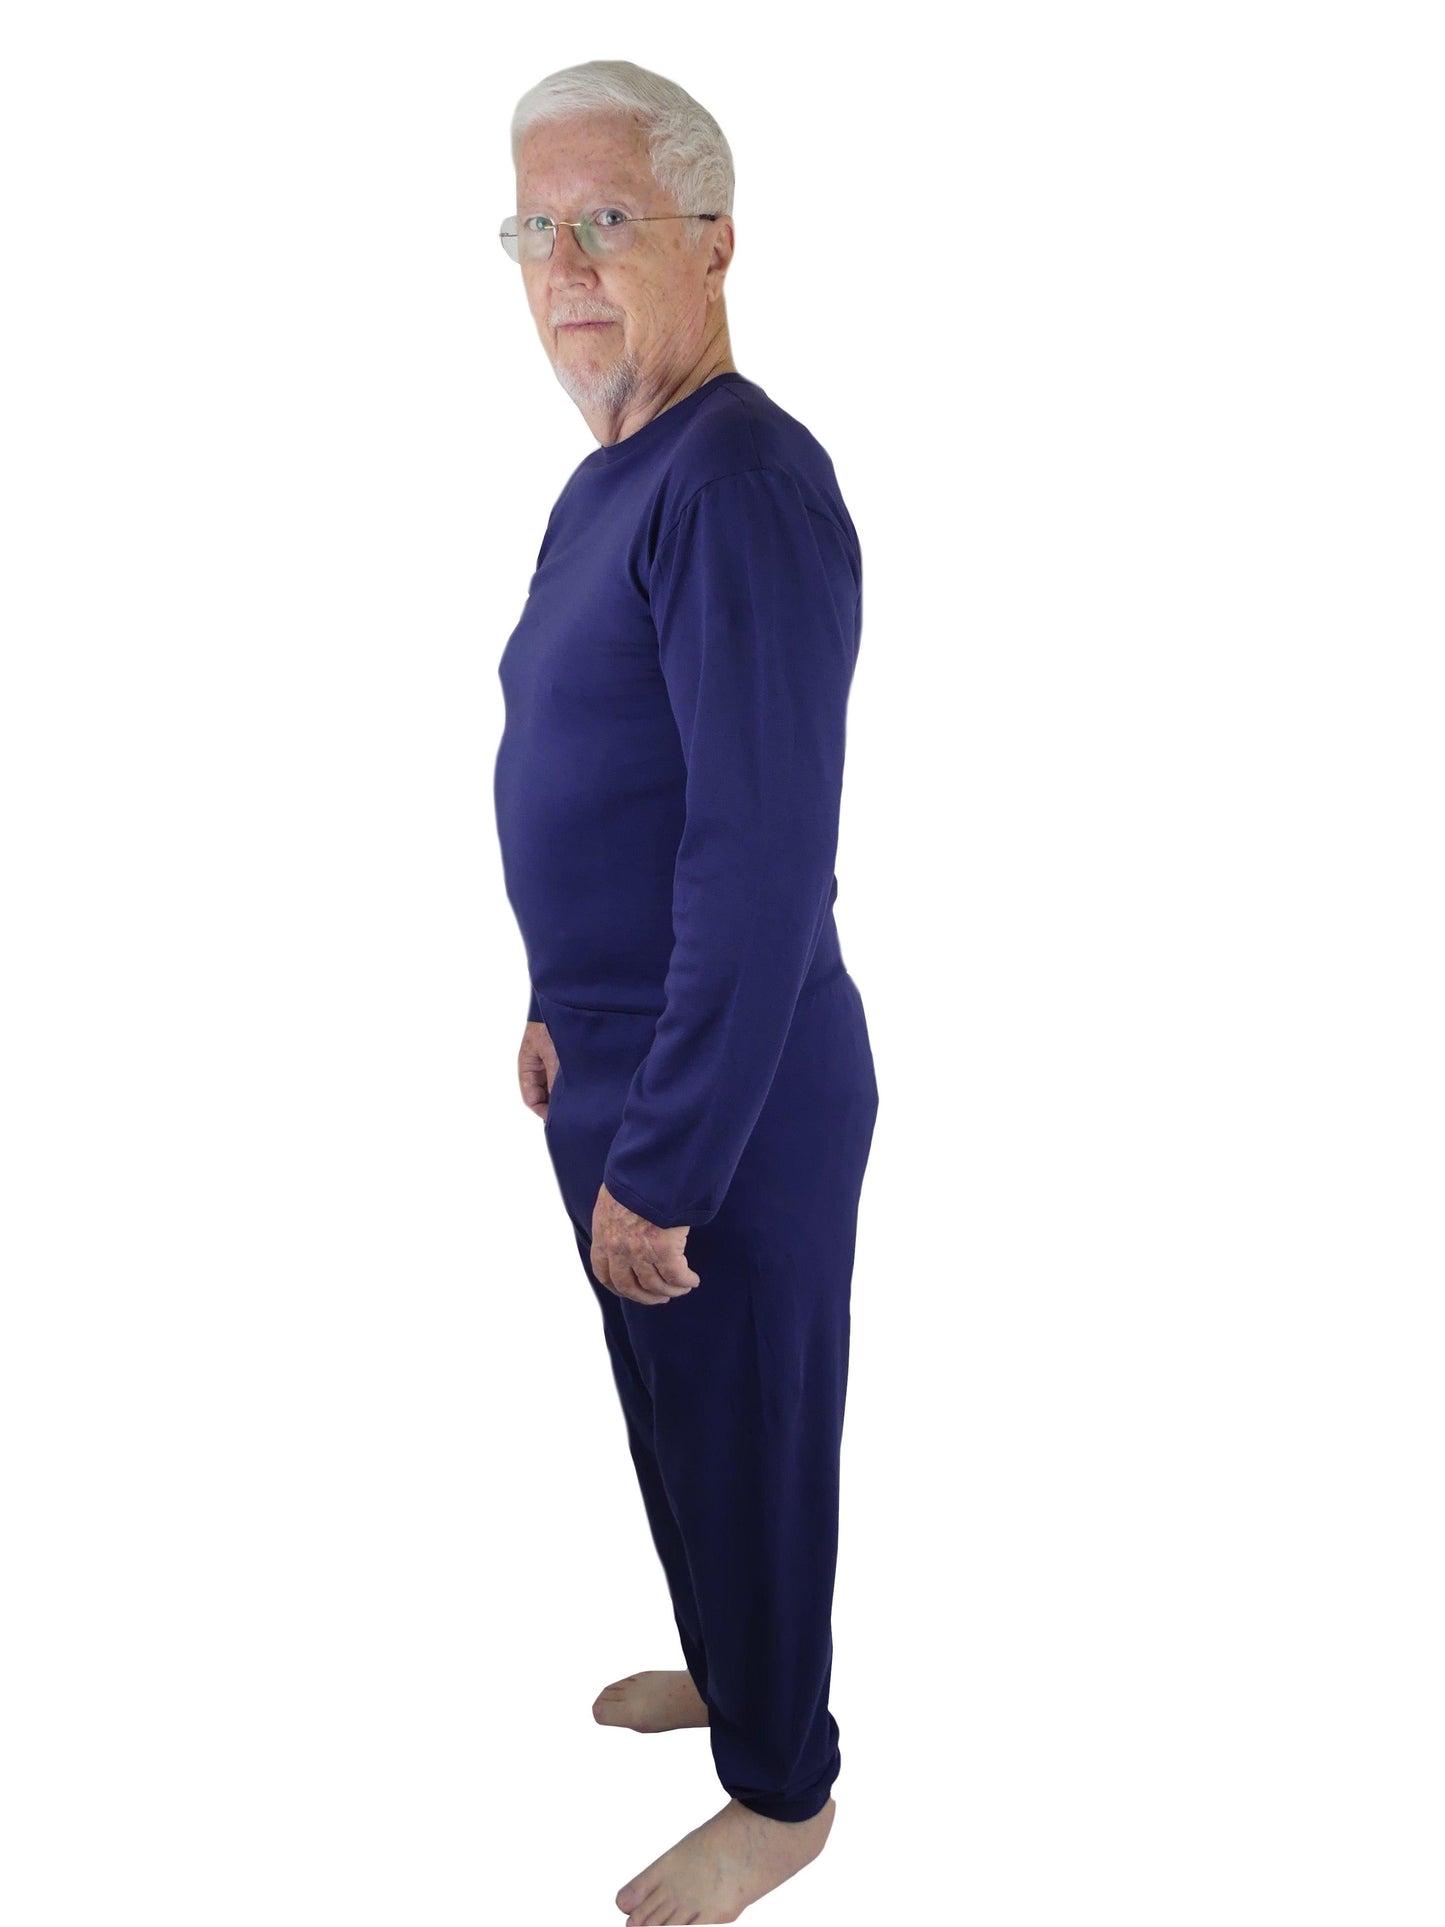 Men's Adaptive Nightwear: All-in-One Pyjamas with Long Sleeves - M146 - MEDORIS